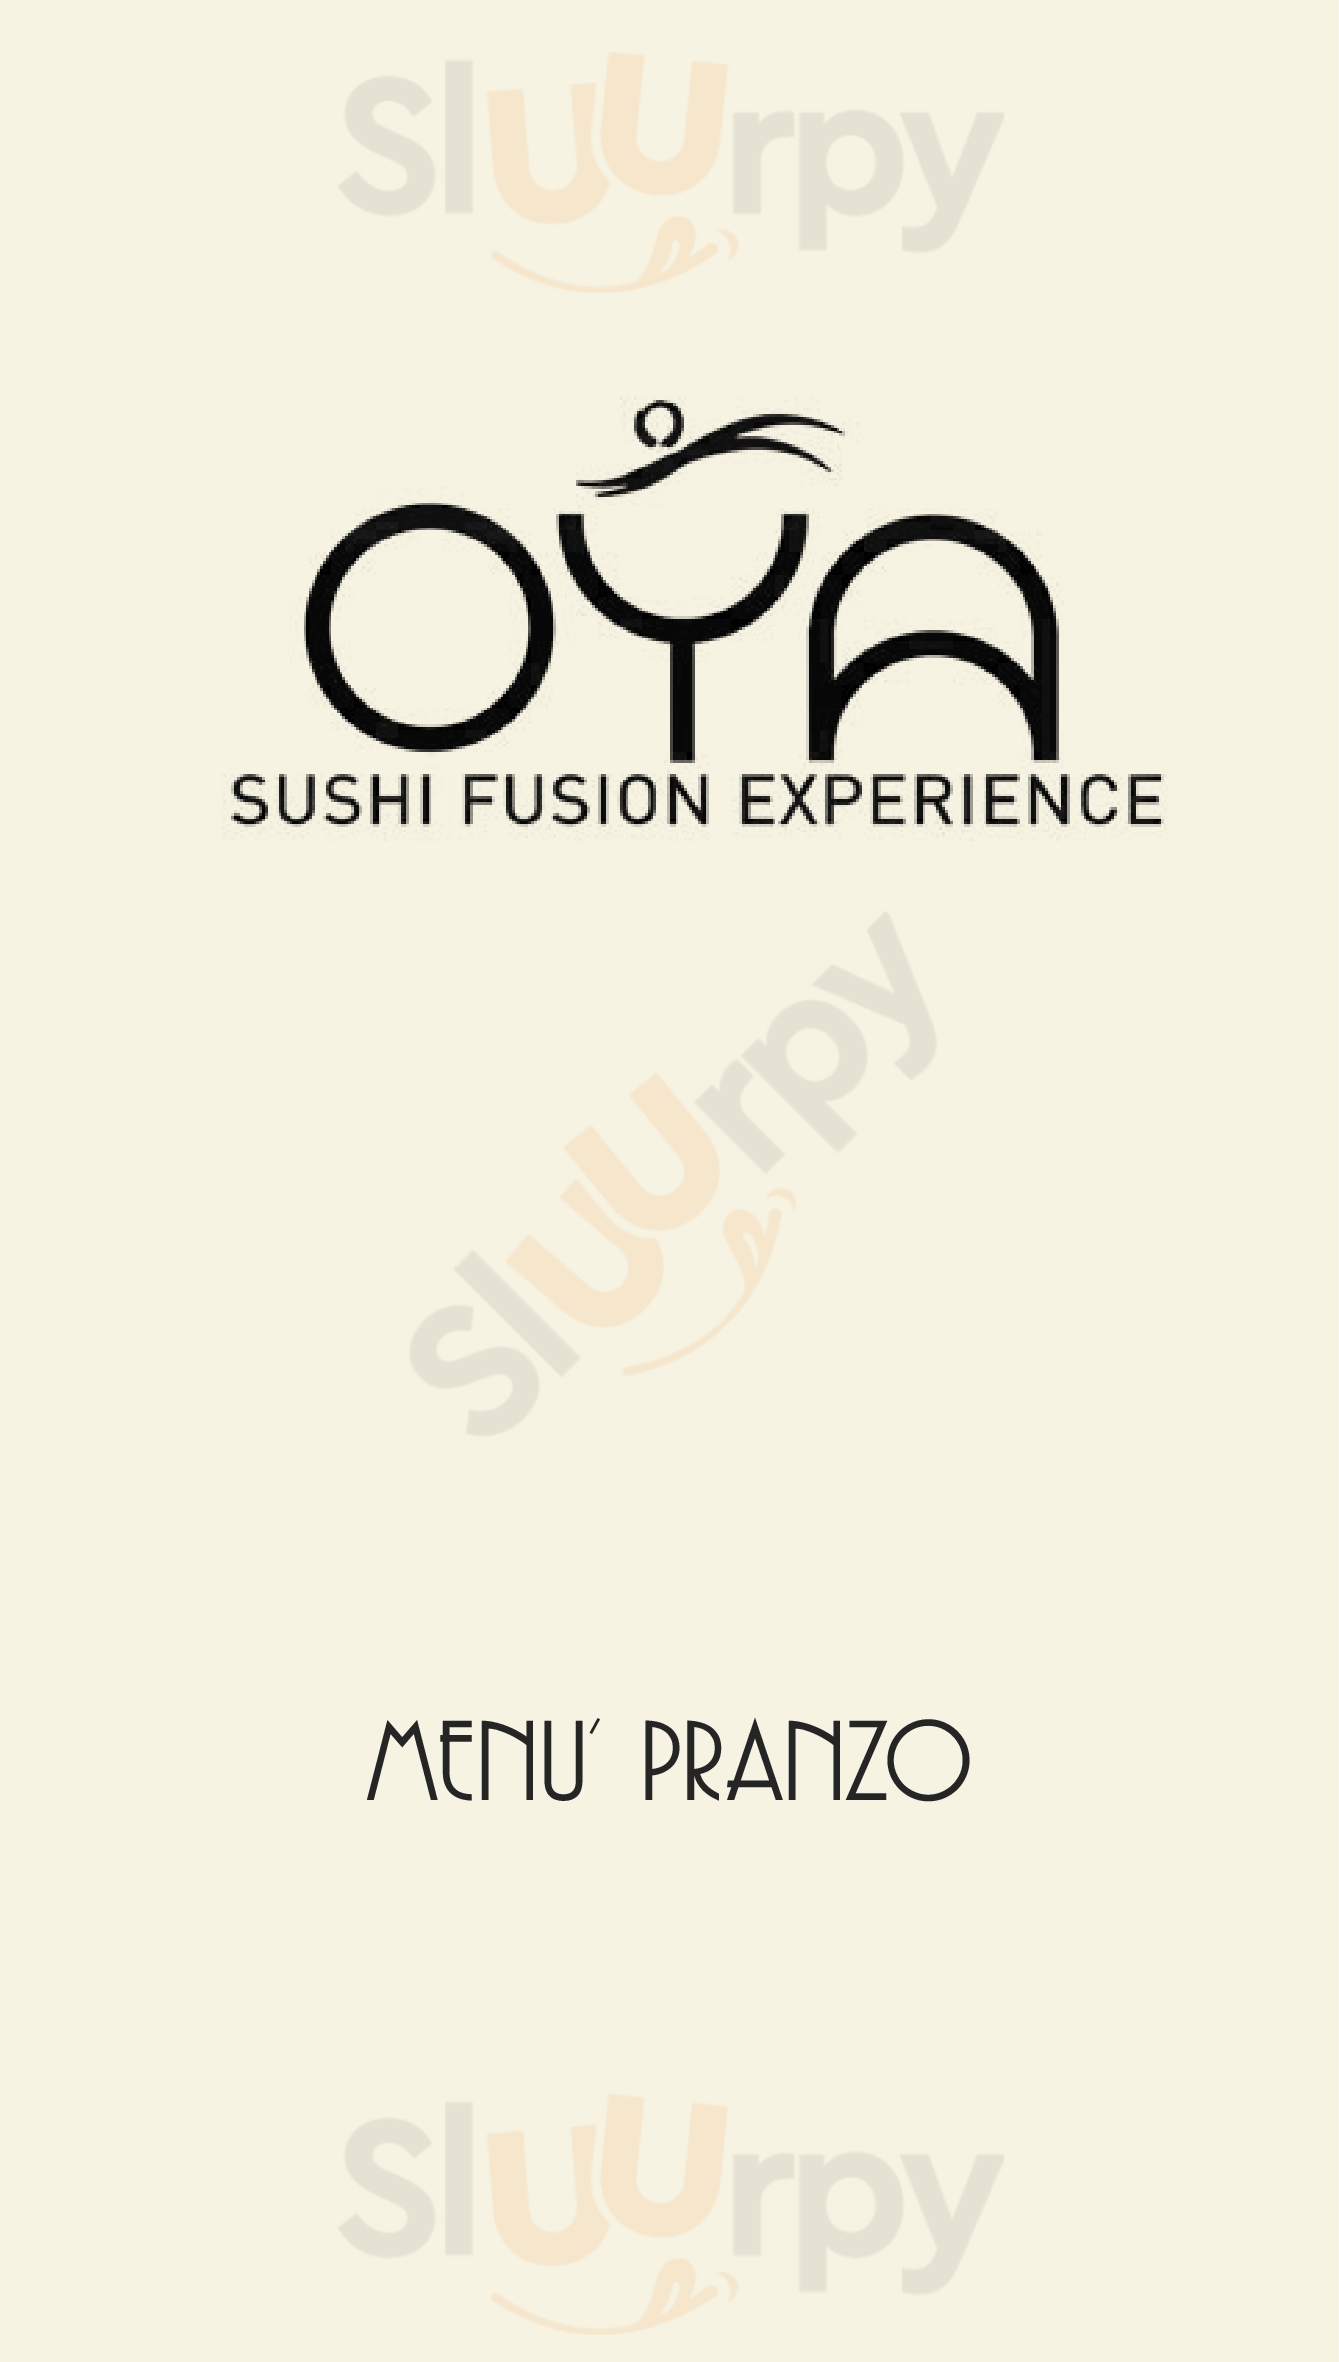 Oya Sushi Fusion Experience Cernusco sul Naviglio menù 1 pagina